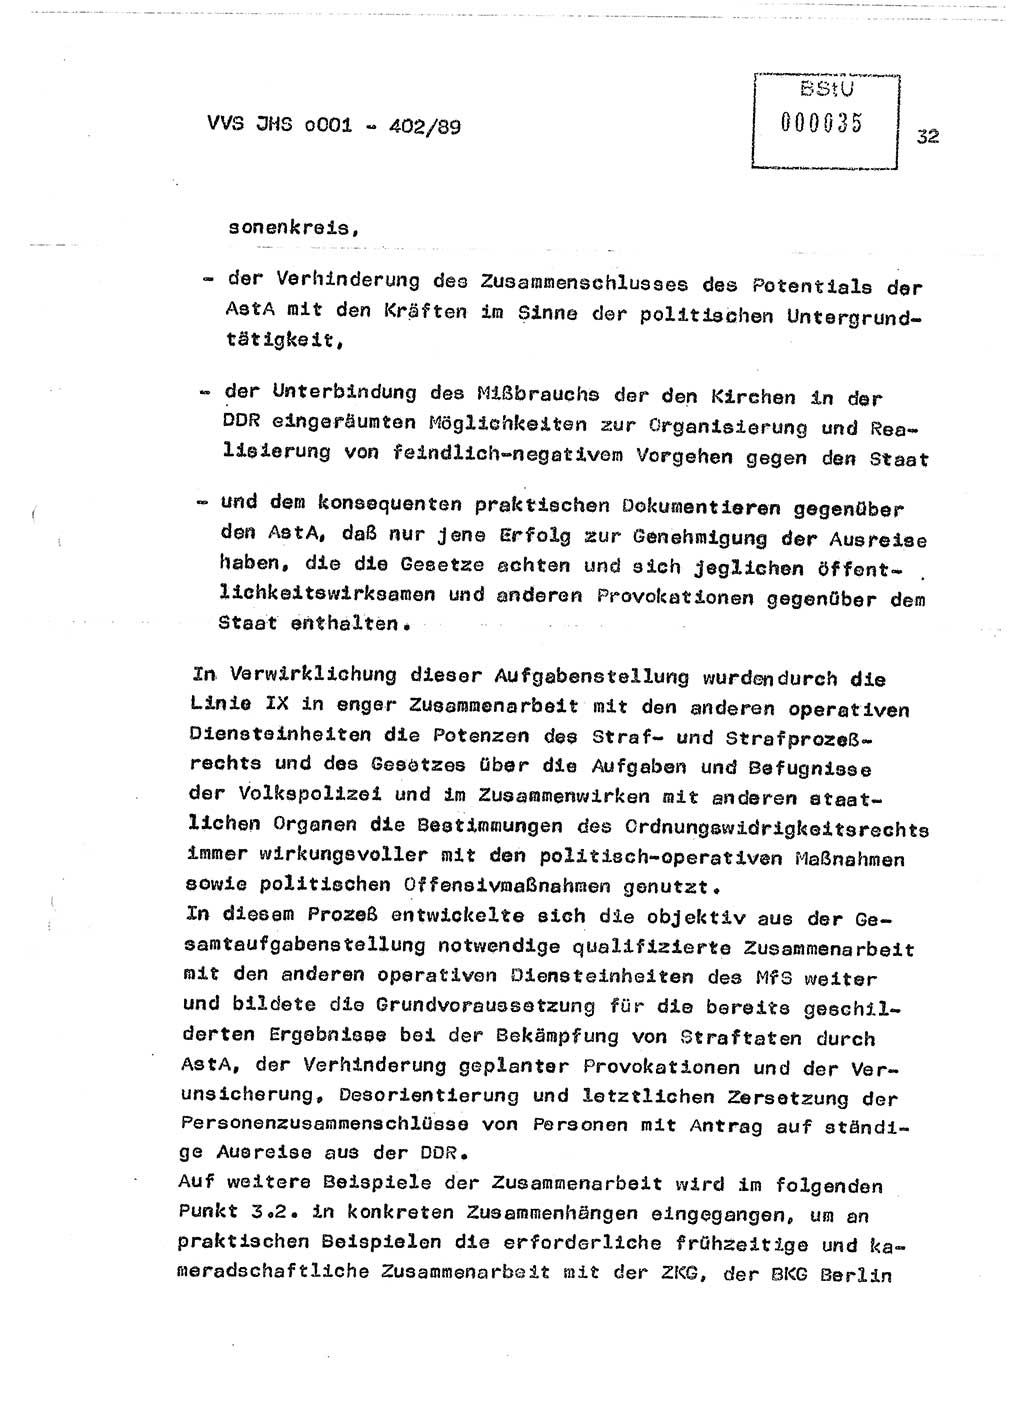 Diplomarbeit Major Günter Müller (HA Ⅸ/9), Ministerium für Staatssicherheit (MfS) [Deutsche Demokratische Republik (DDR)], Juristische Hochschule (JHS), Vertrauliche Verschlußsache (VVS) o001-402/89, Potsdam 1989, Seite 32 (Dipl.-Arb. MfS DDR JHS VVS o001-402/89 1989, S. 32)